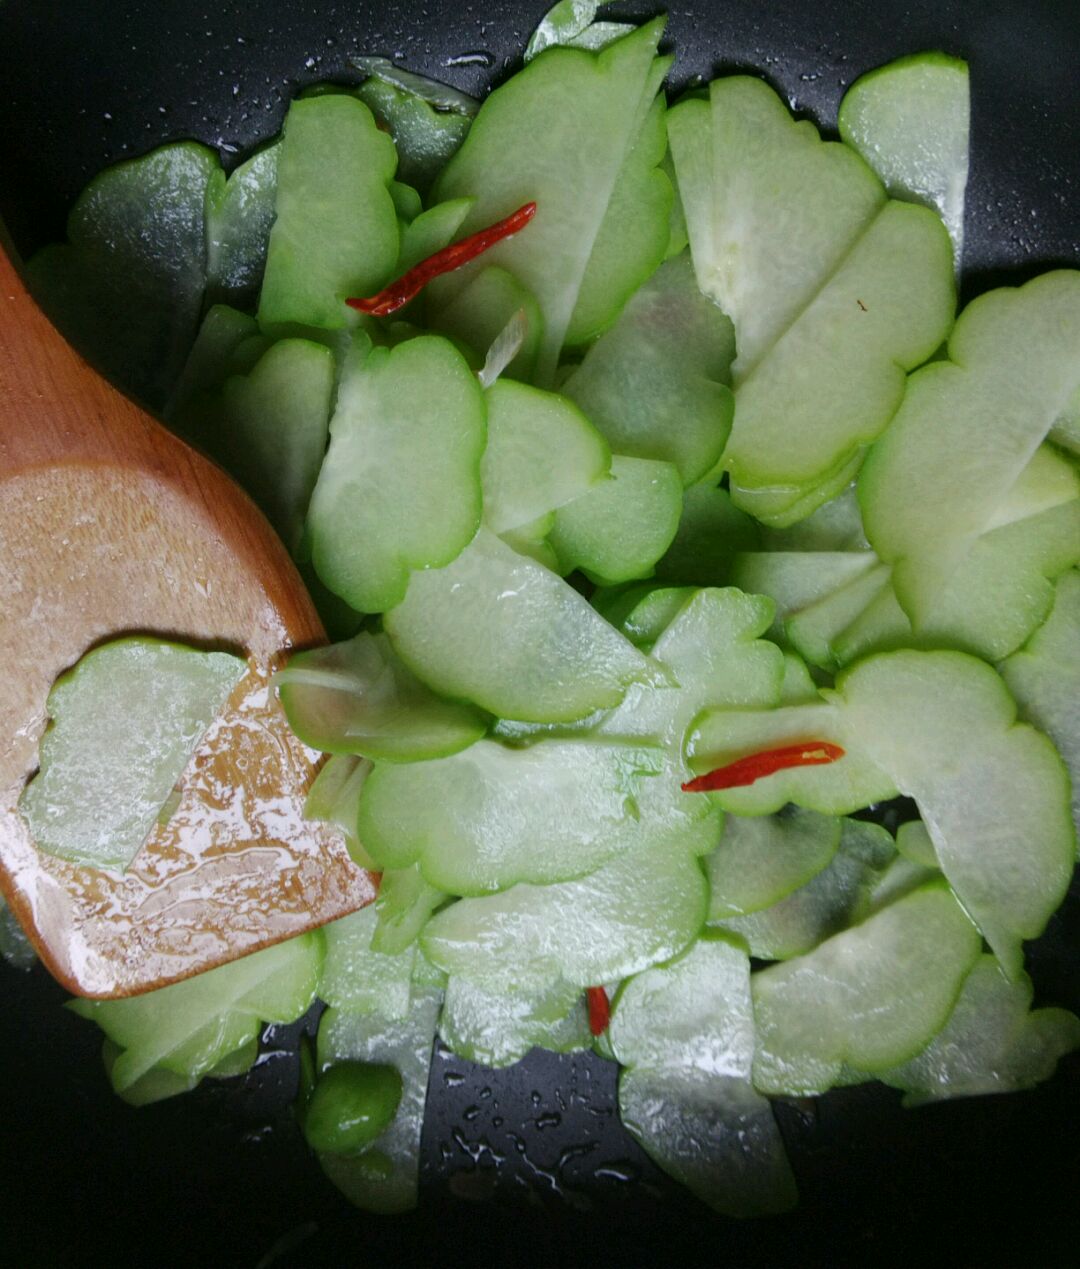 营养丰富热量低的佛手瓜 变身酸甜爽脆的开胃腌菜